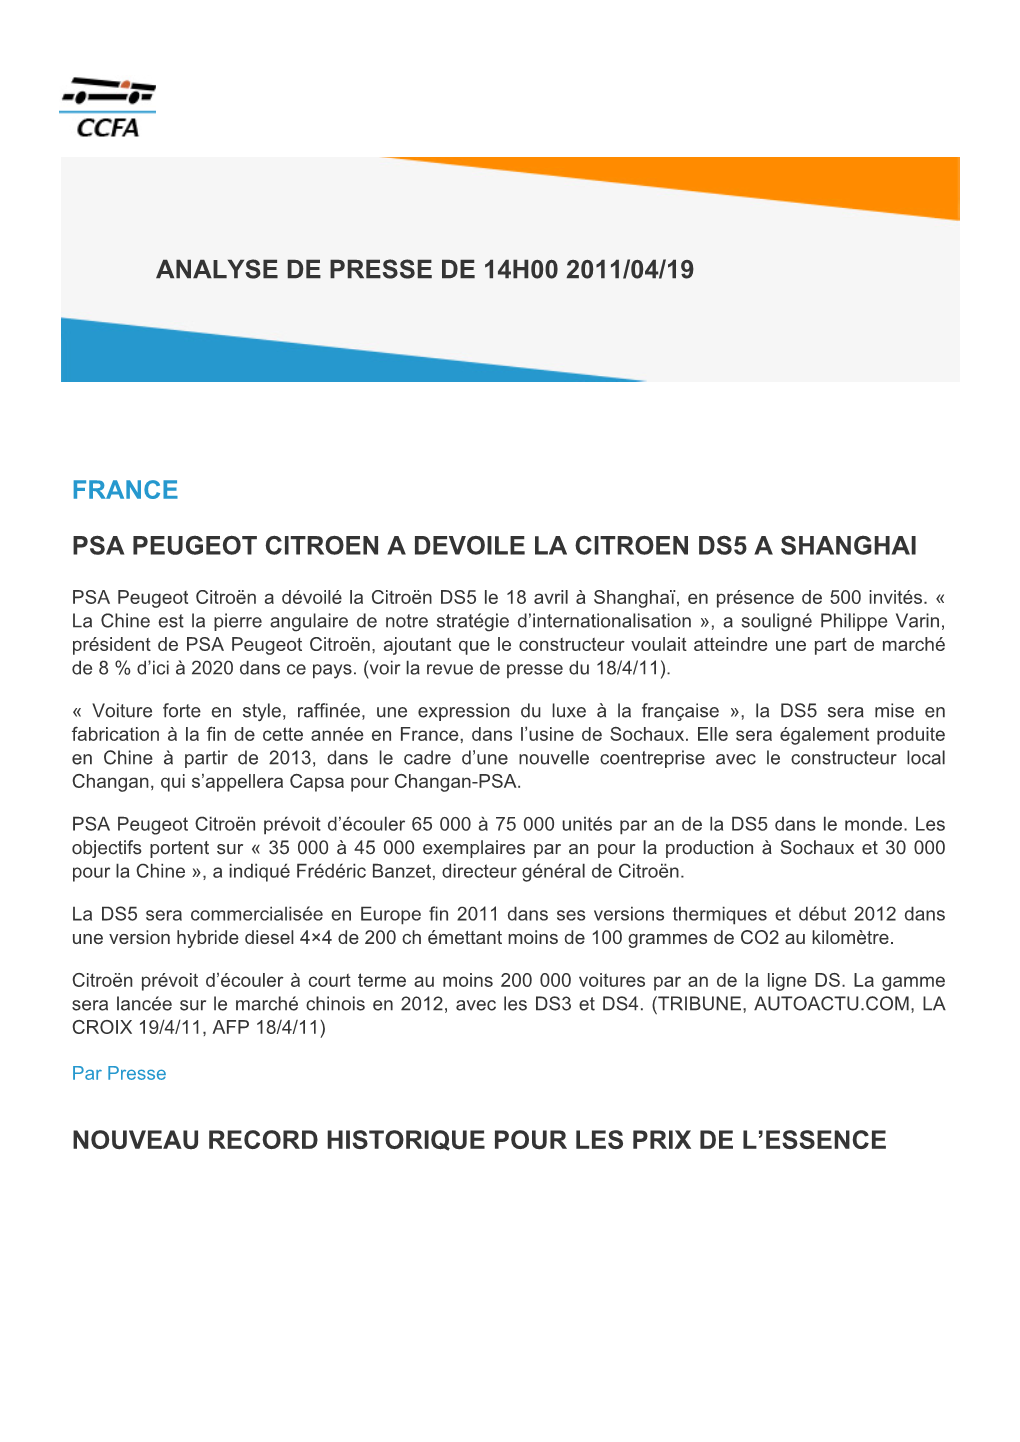 France Psa Peugeot Citroen a Devoile La